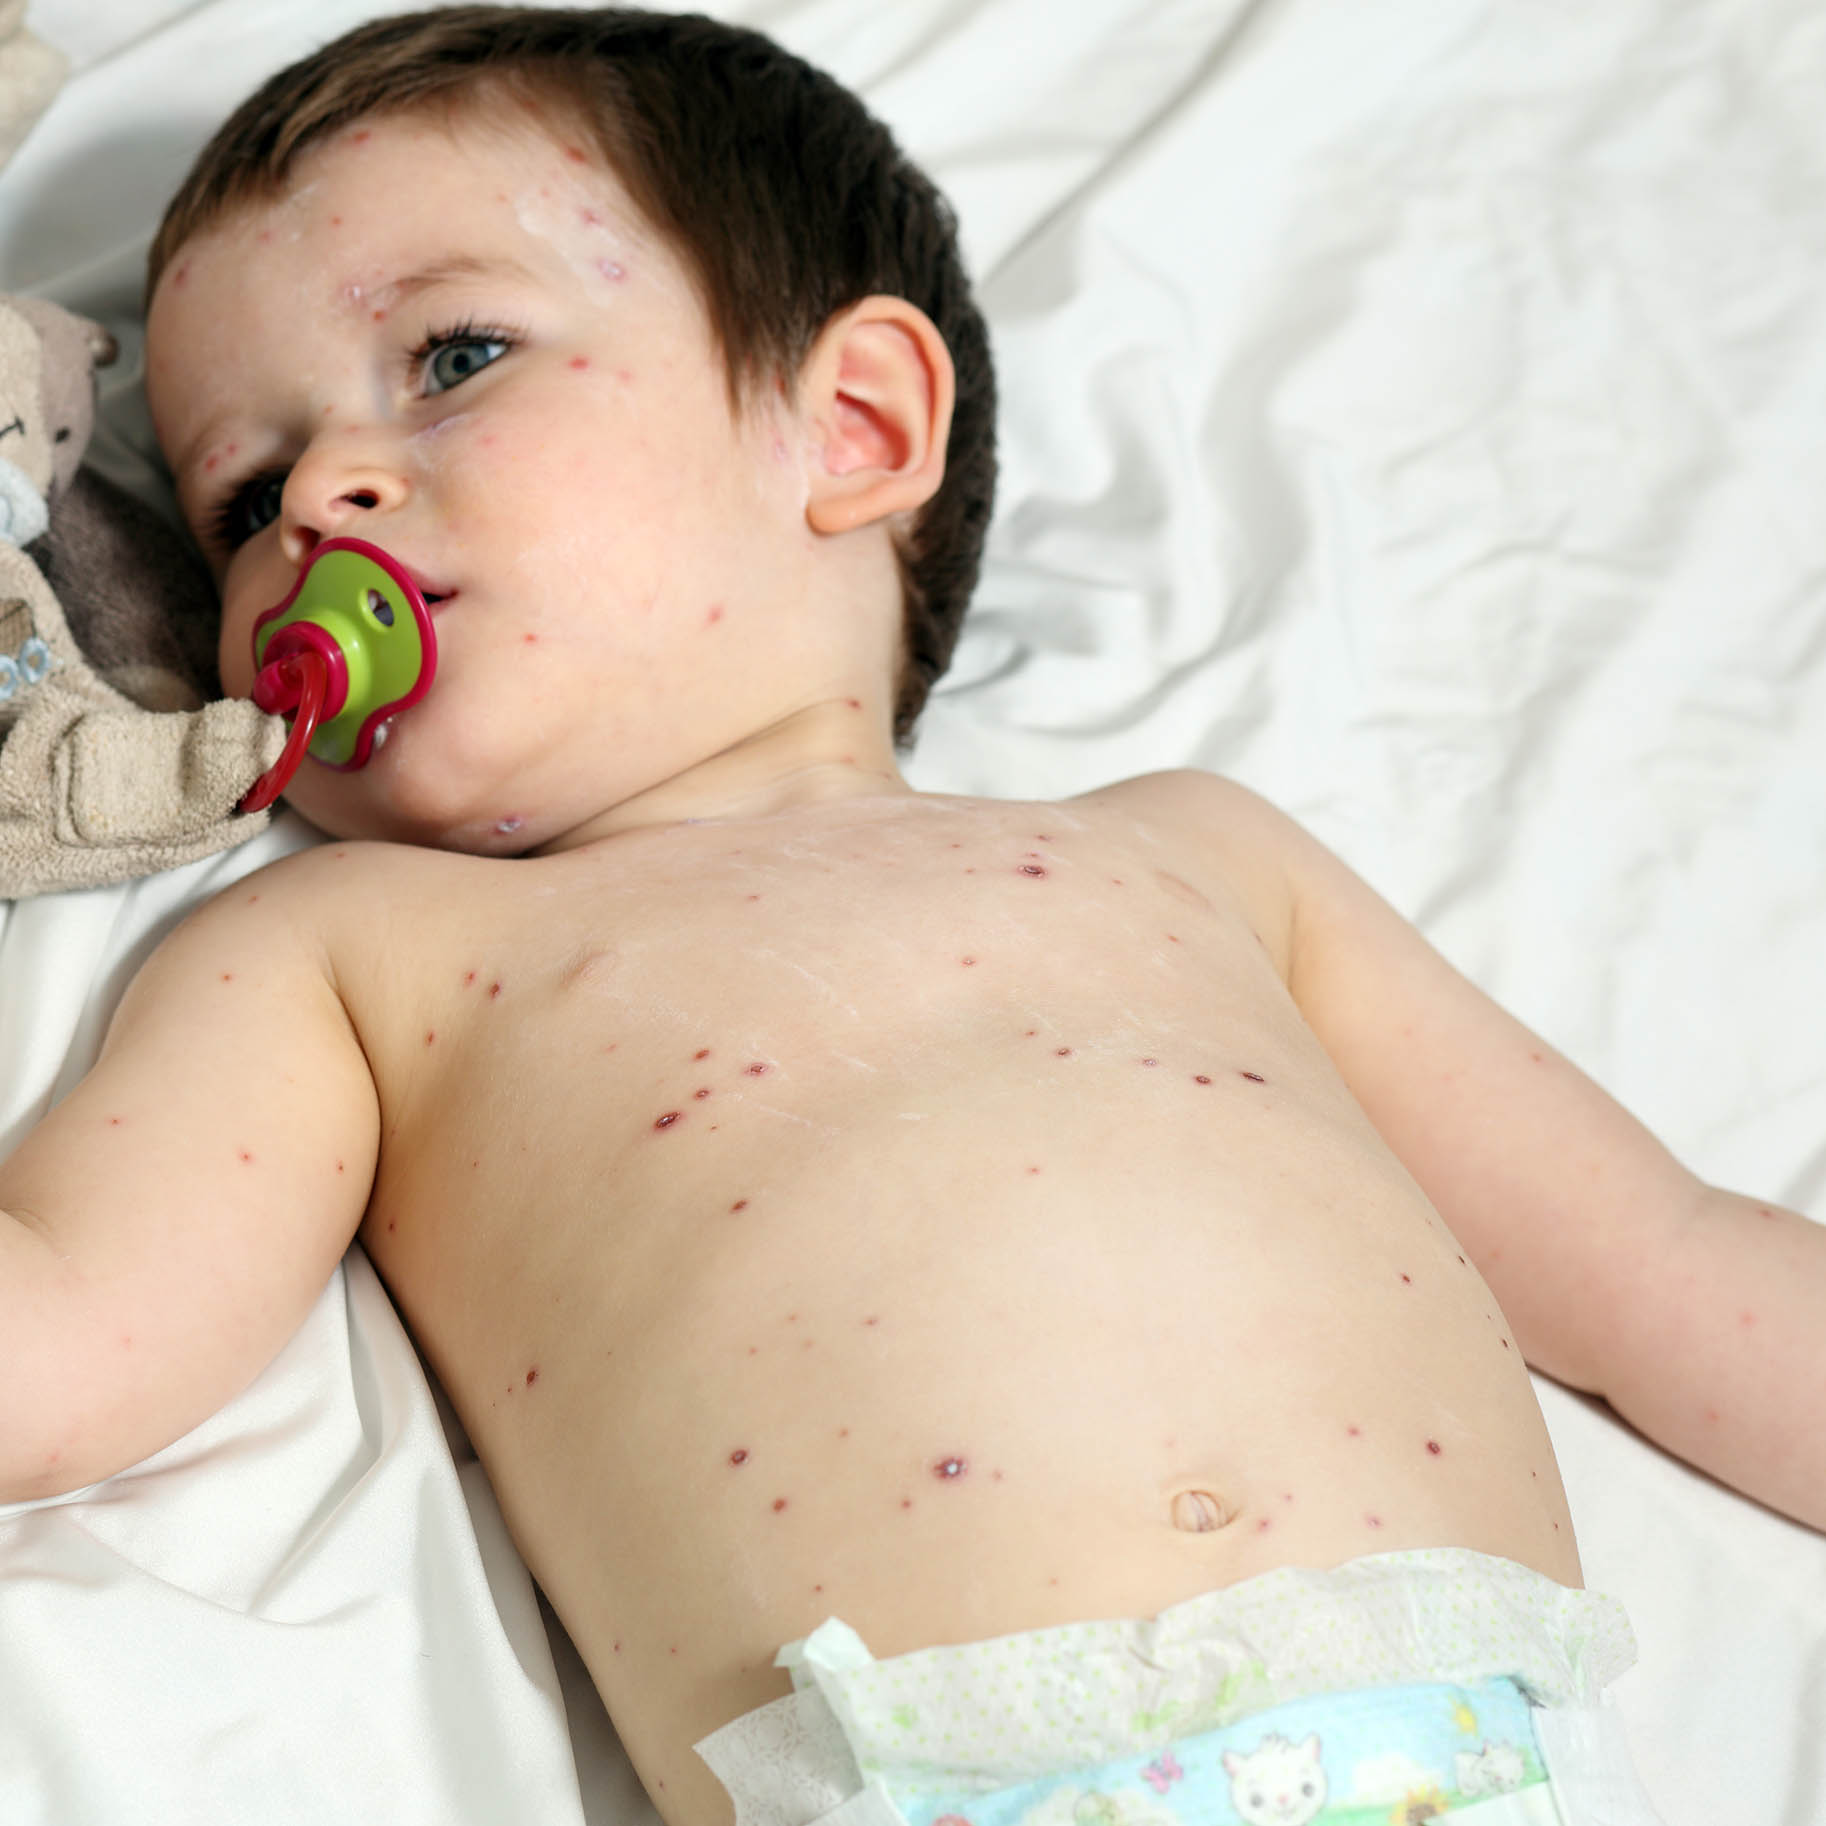 bambino disteso nel letto ricoperto da ponfi dovuti alla varicella